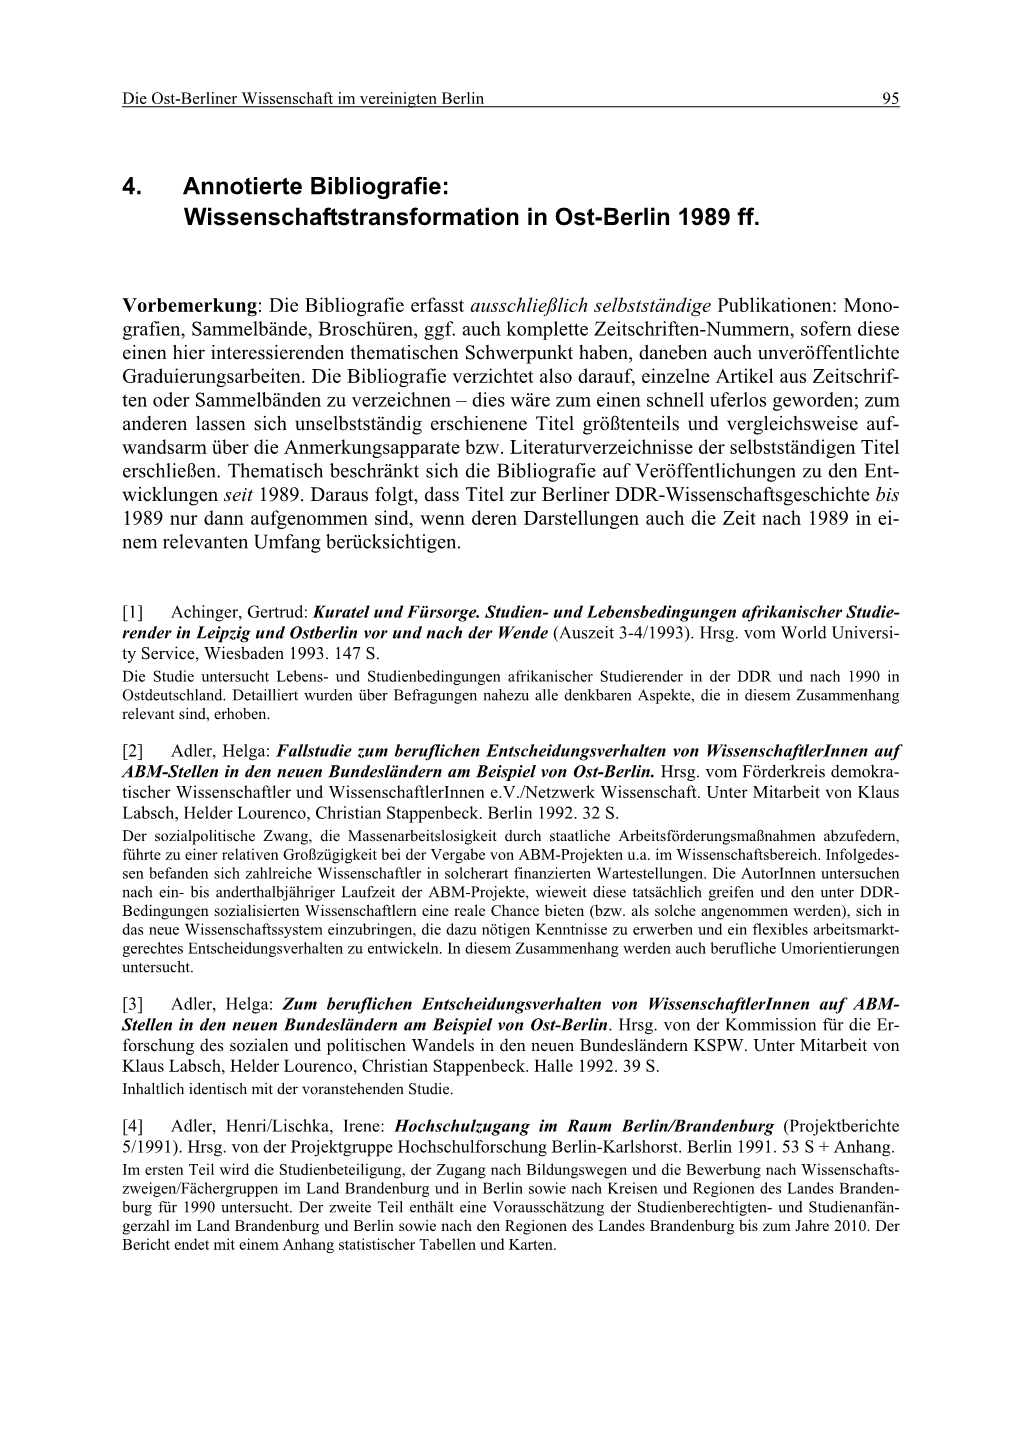 Wissenschaftstransformation in Ost-Berlin 1989 Ff